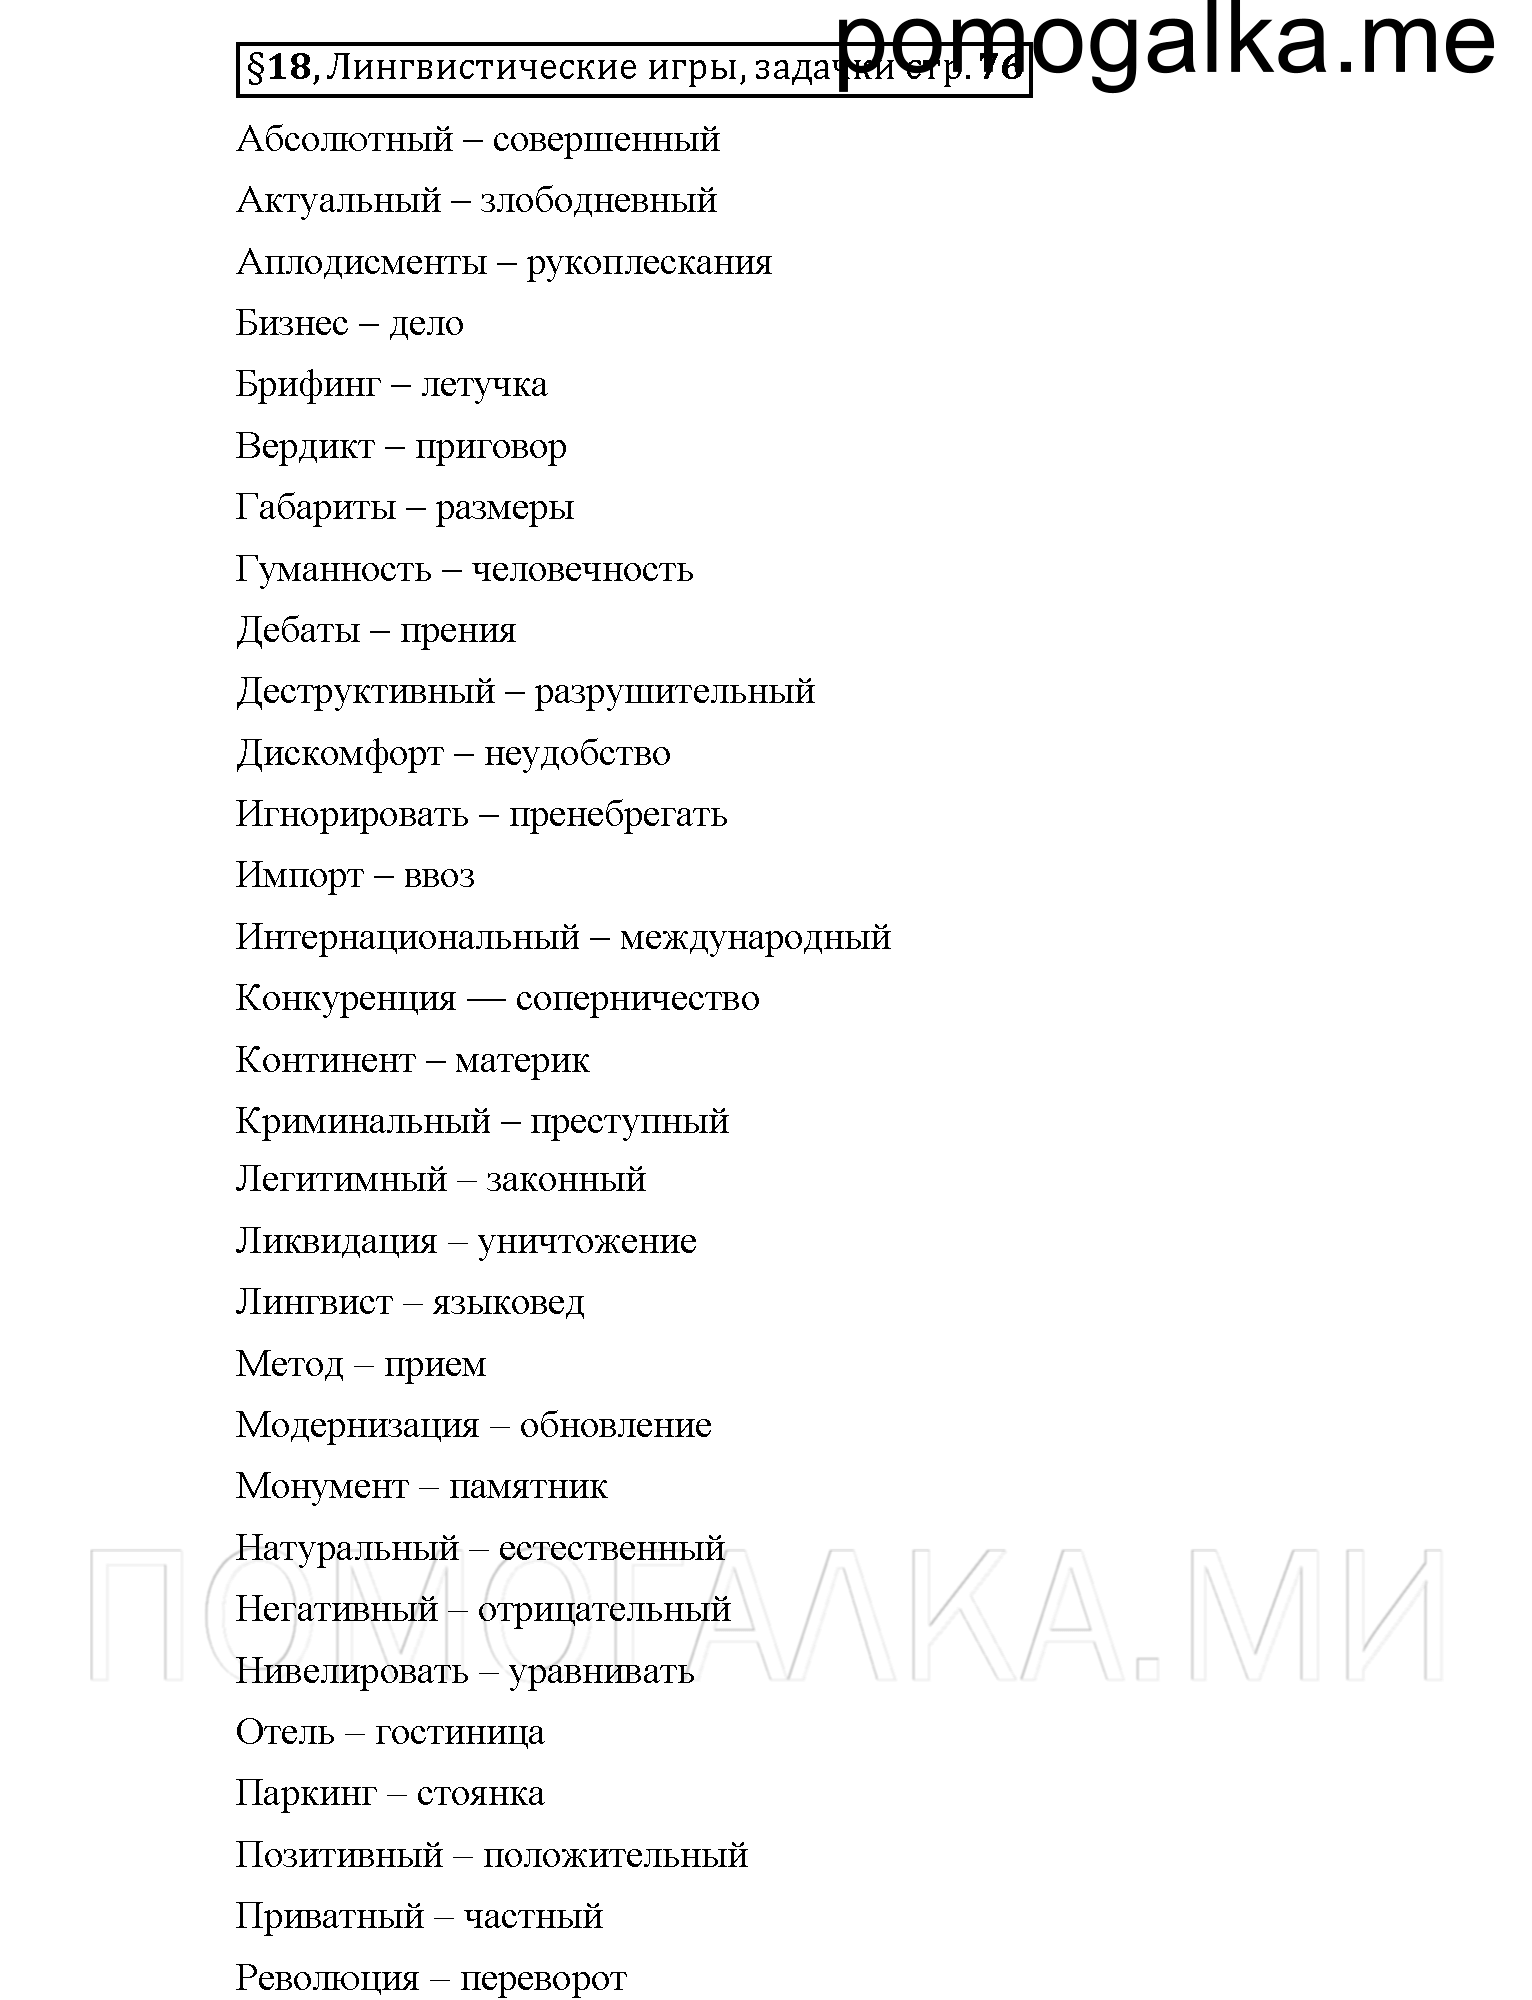 Страница 76, Дополнителые вопросы 6 класс Рыбченкова